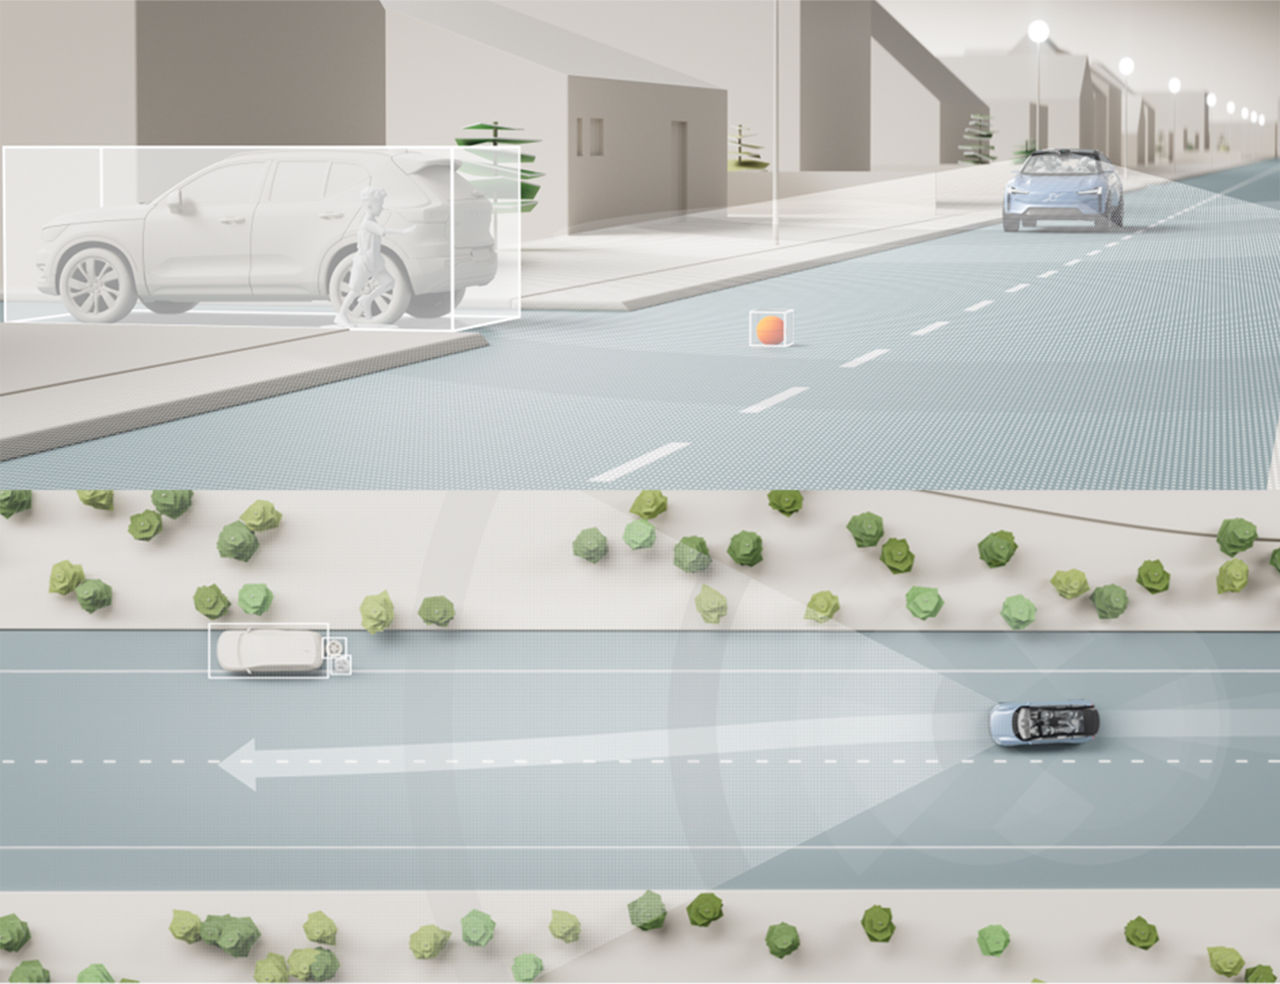 Volvos oövervakade självkörning har premiär i Kalifornien